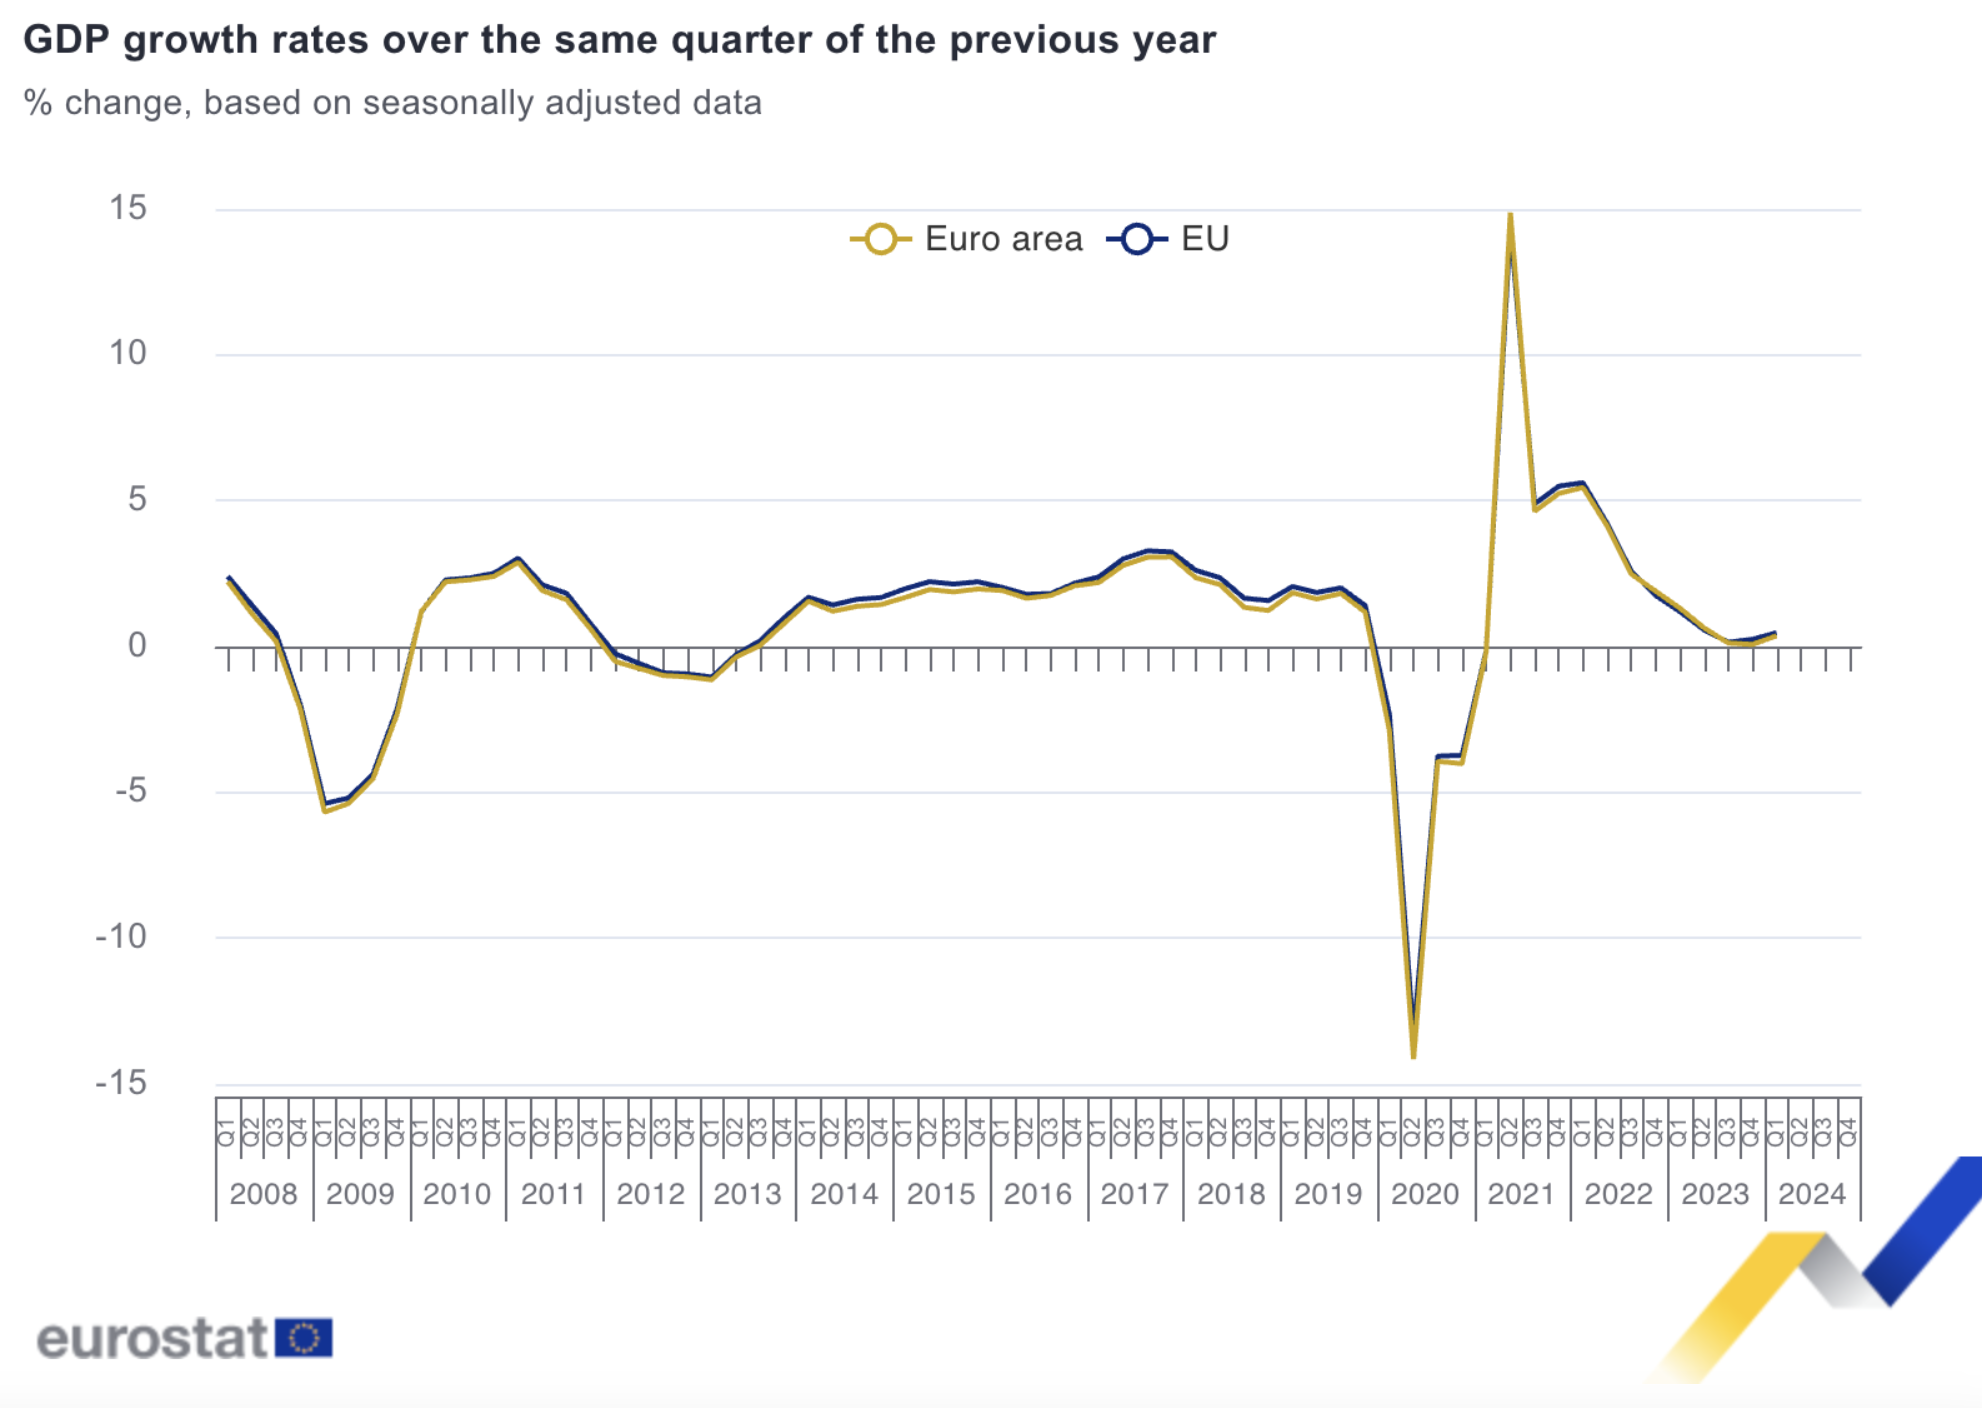 De economische groei in de eurozone per kwartaal, vergeleken met dezelfde periode een jaar eerder.